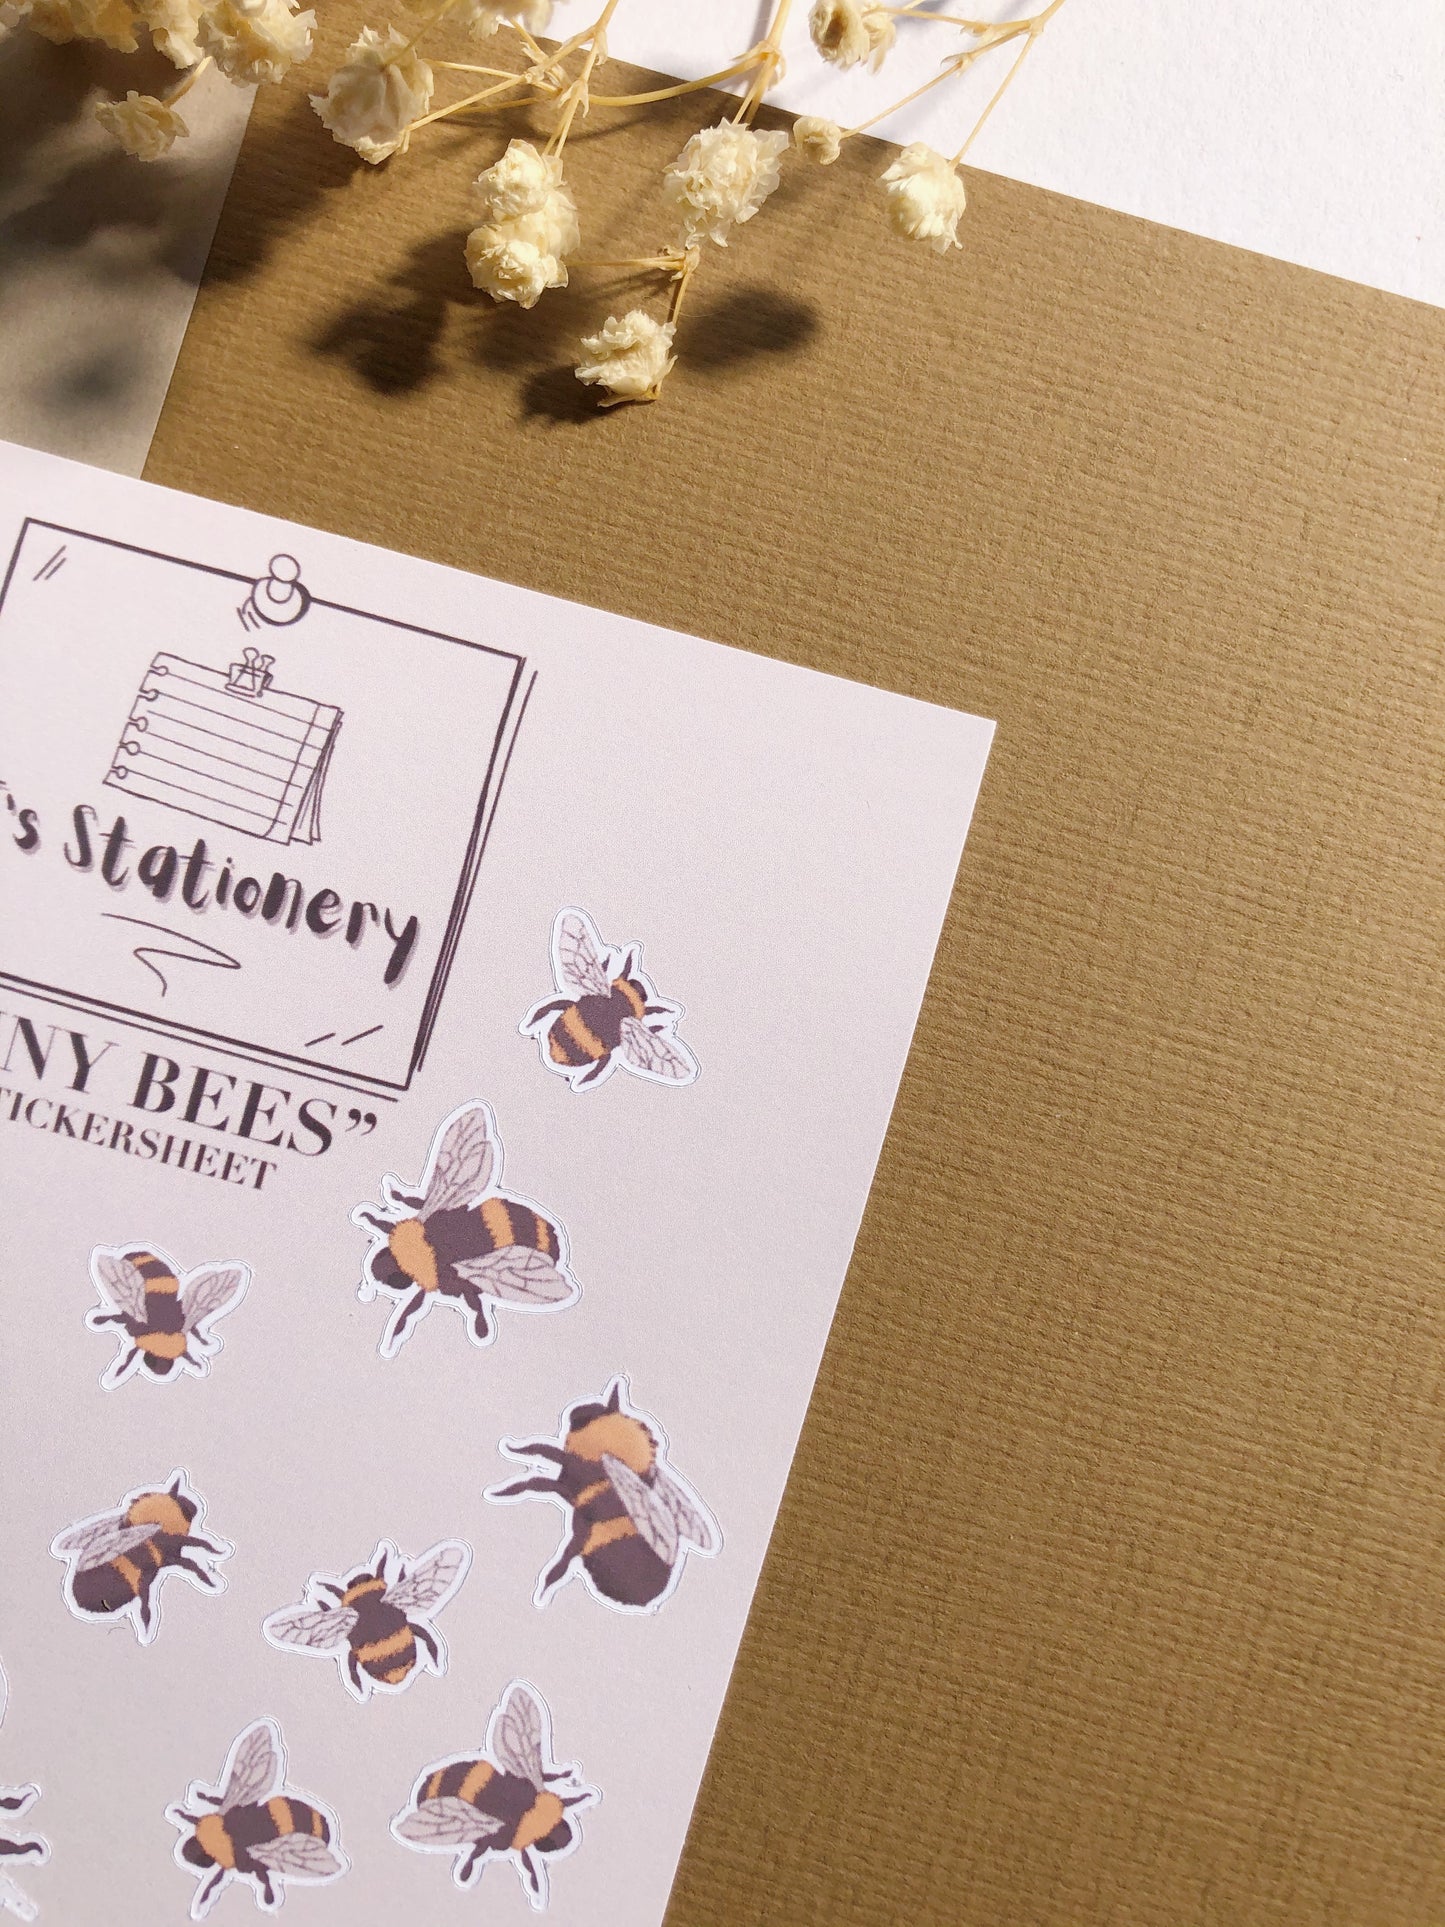 "Tiny Bees"